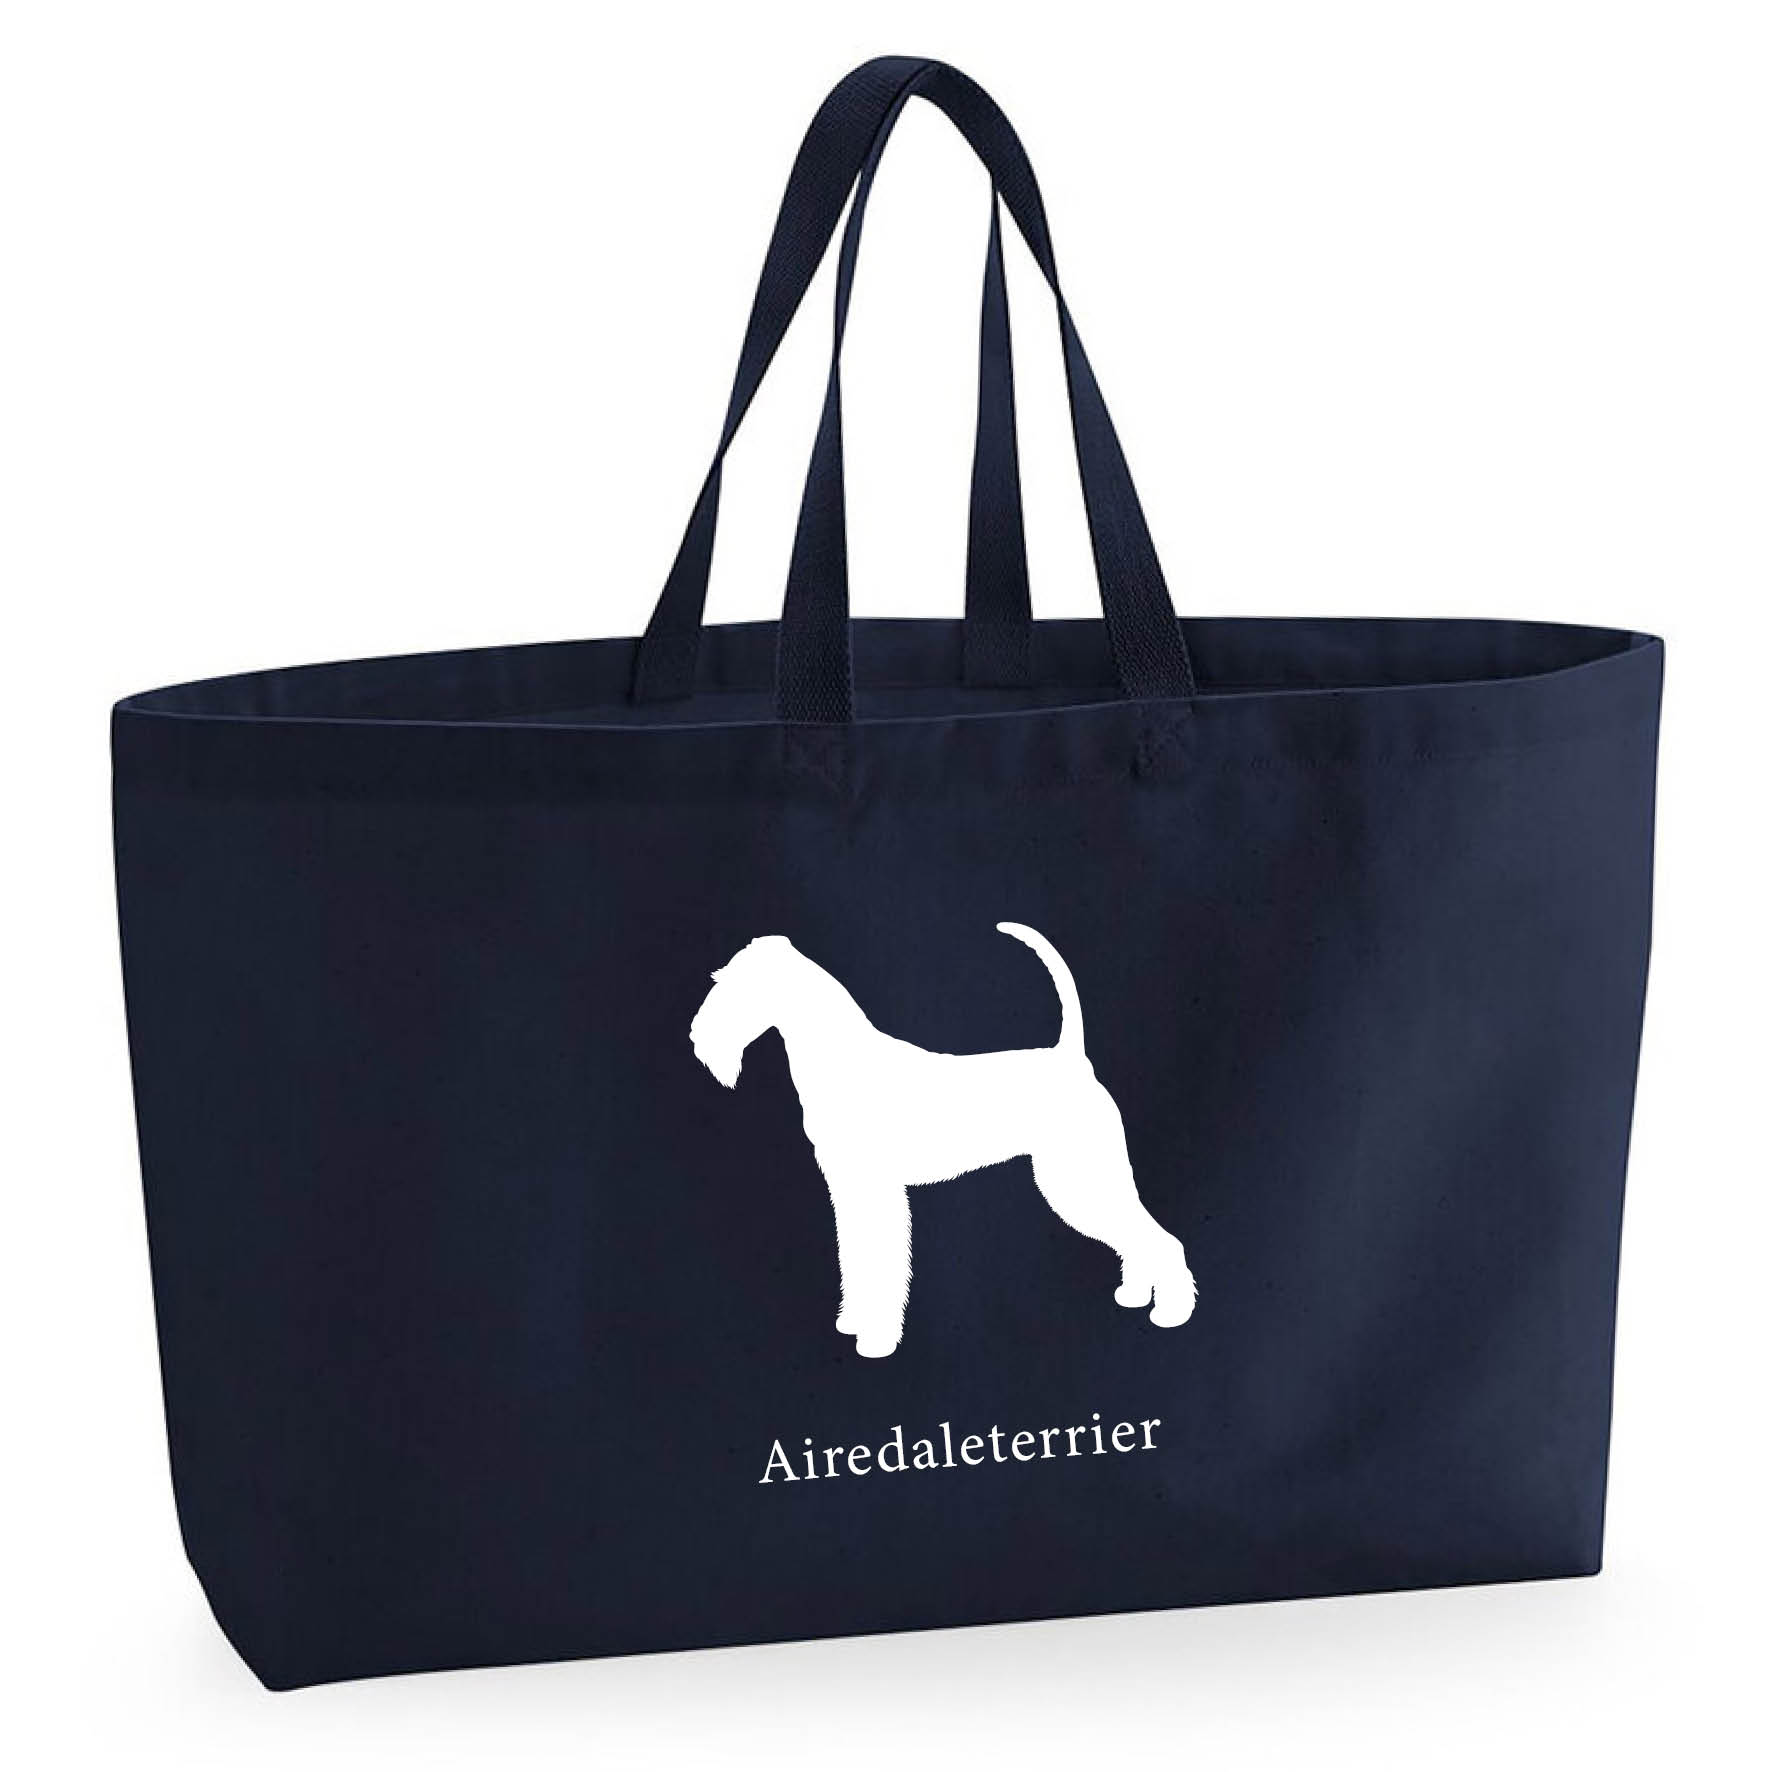 Tygkasse Airedaleterrier - Oversized bag